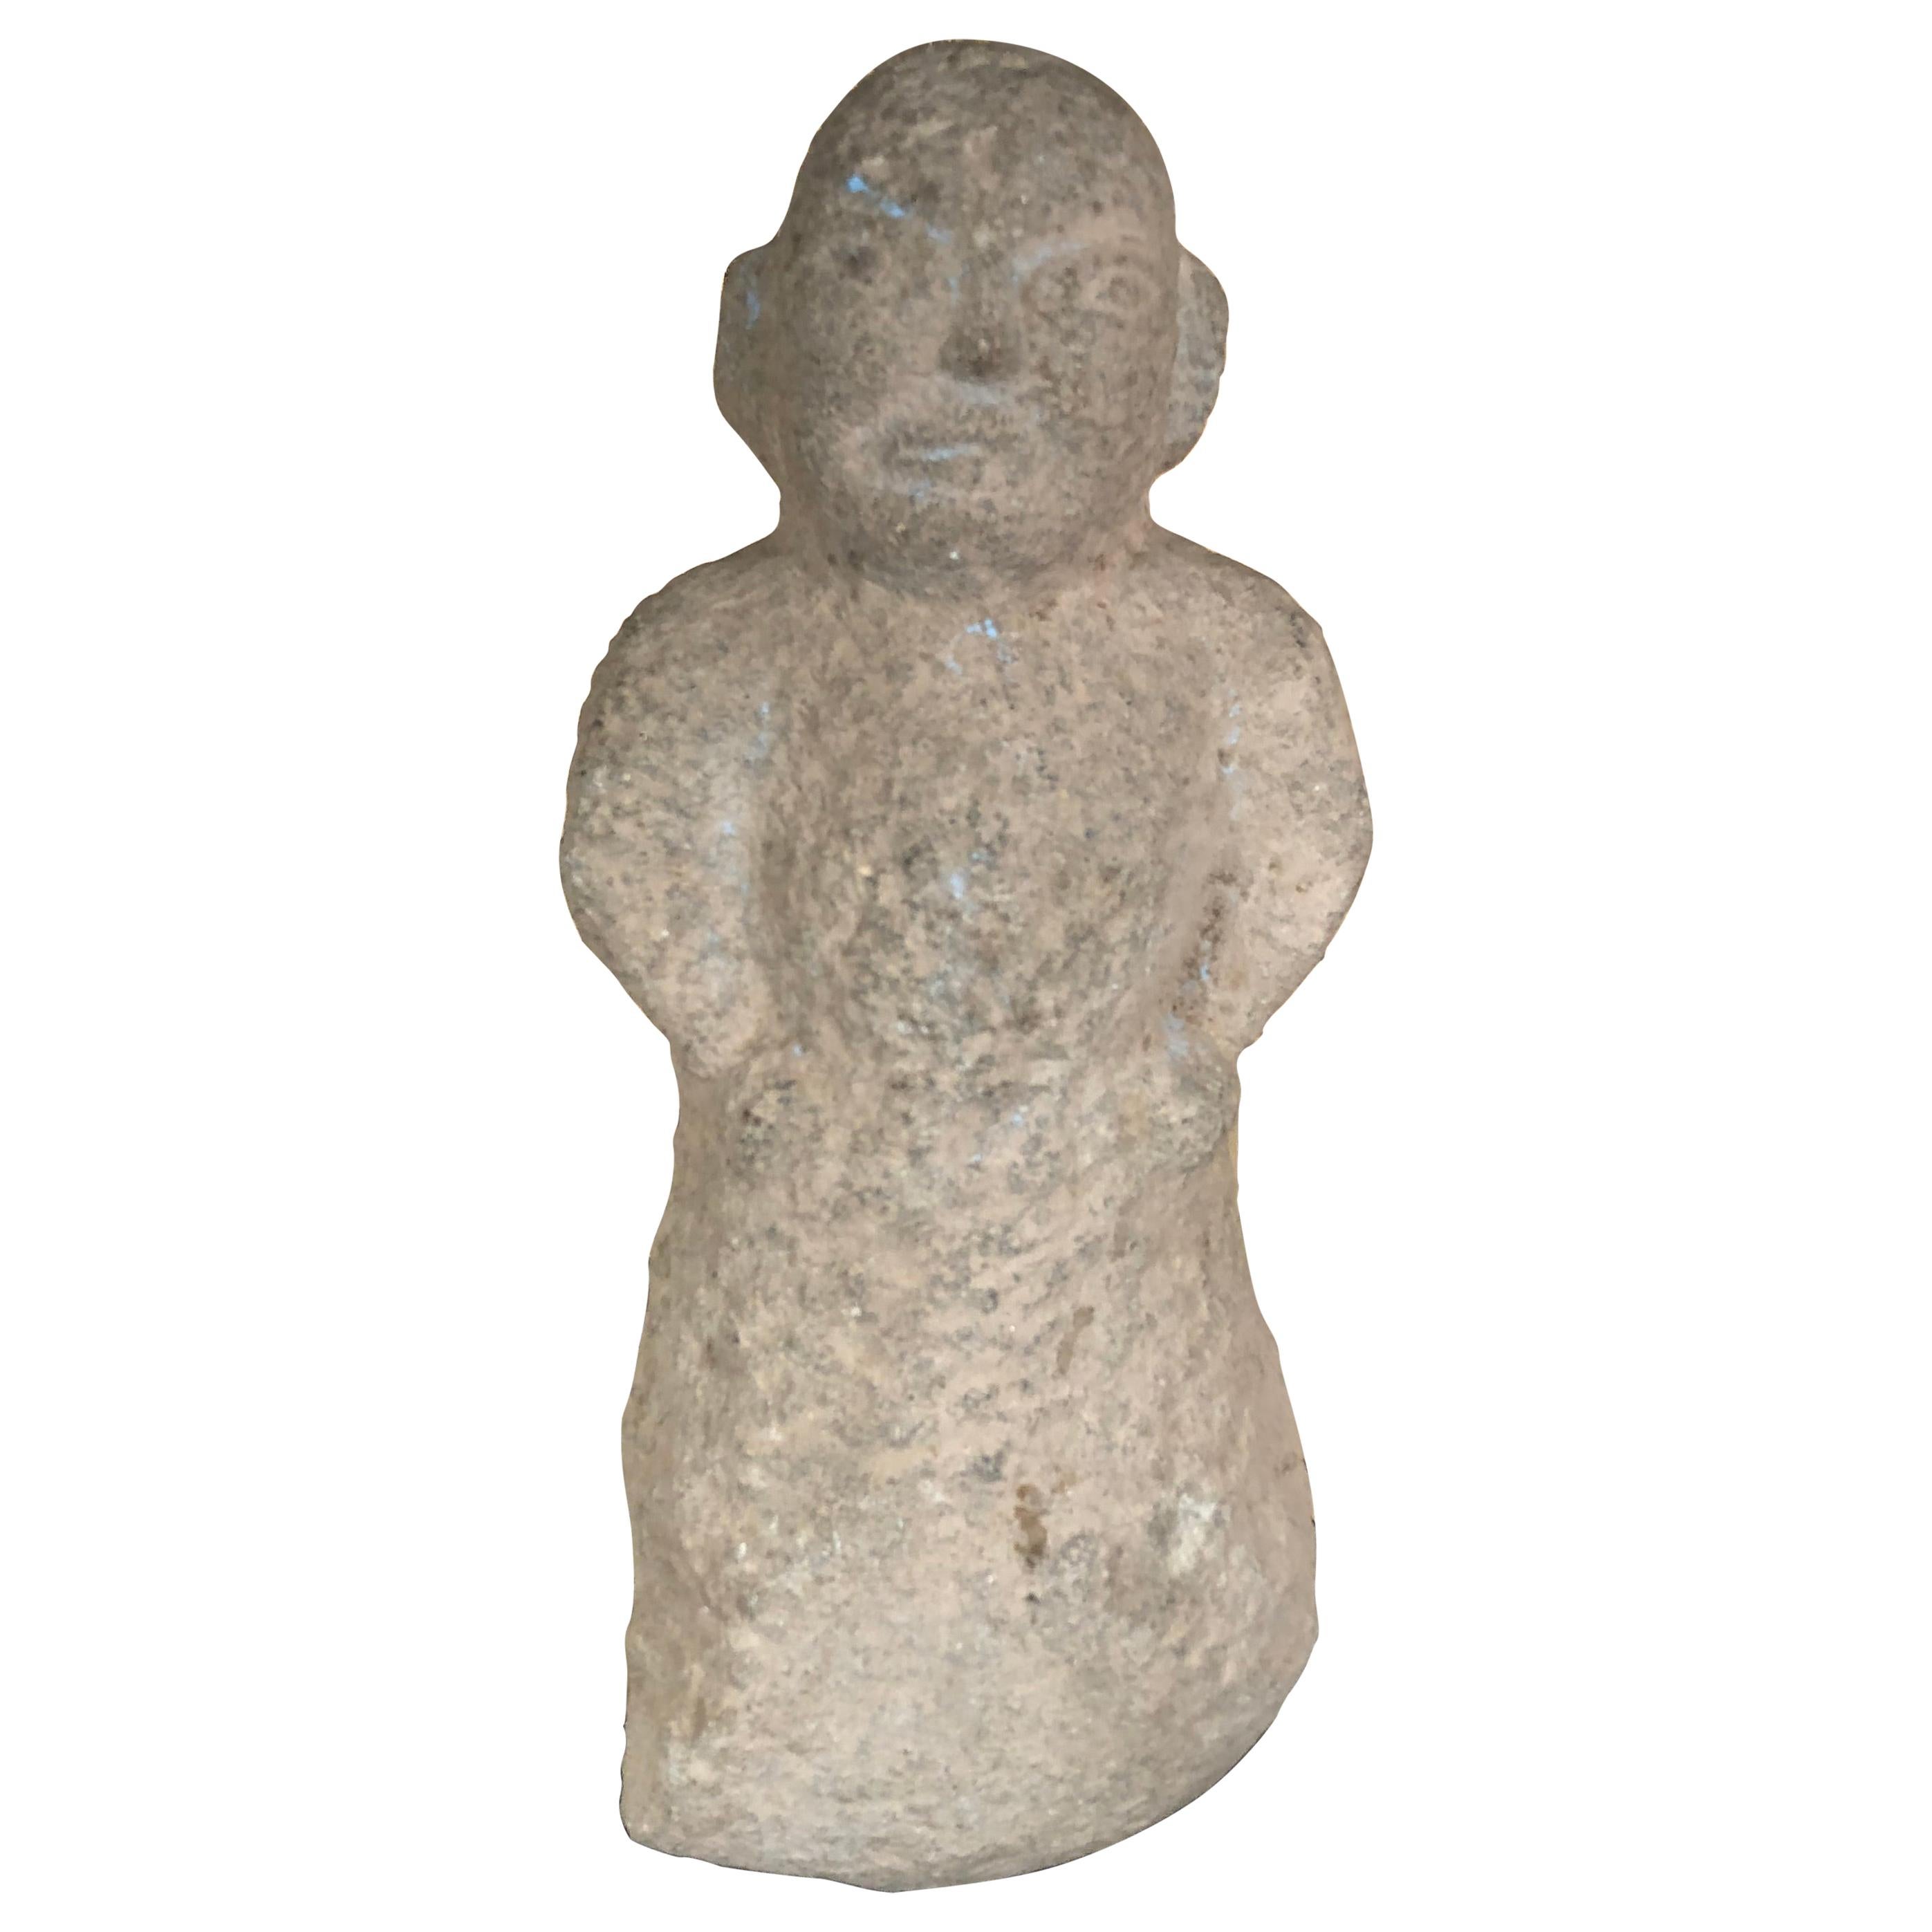 Antica figura maschile cinese in pietra, 206 a.C.-220 d.C.